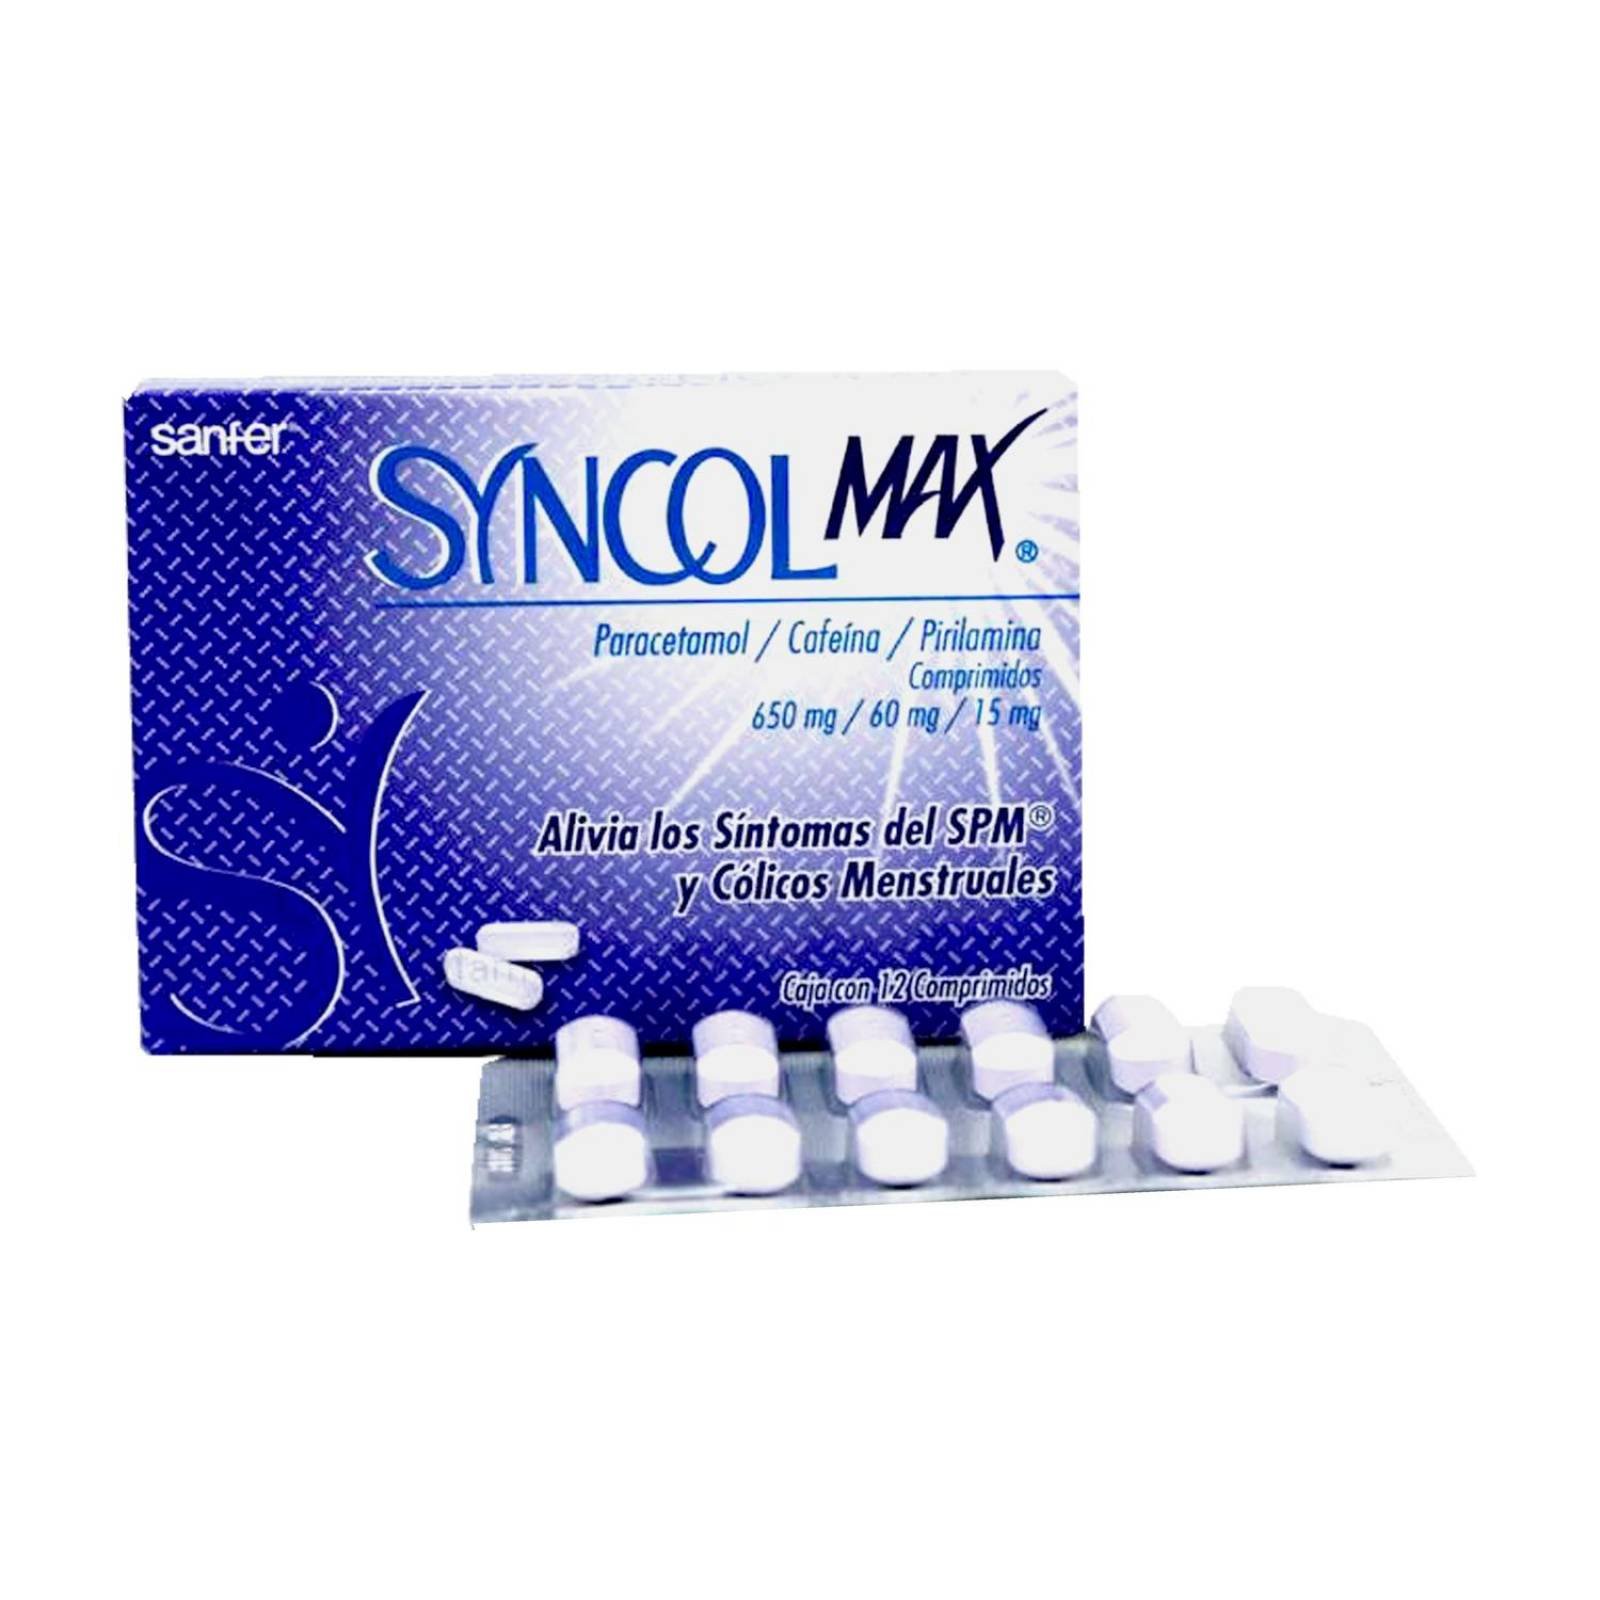 Syncol Max 650 mg/60 mg/15 mg Caja Con 12 Comprimidos 